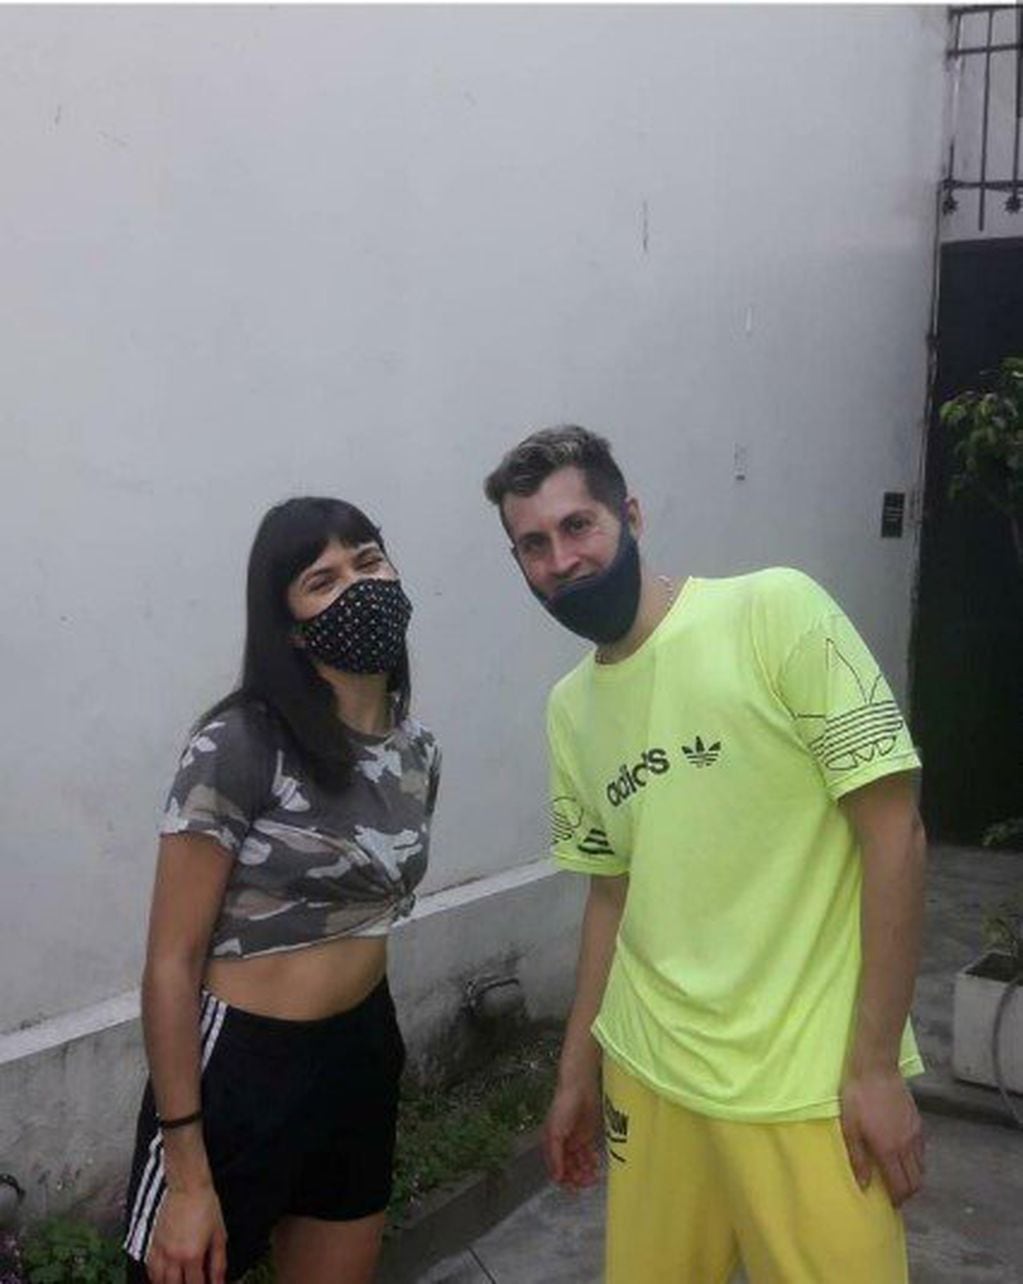 Julieta Antón y el atacante, Sebastián Damián Villarreal, antes del momento del ataque (Foto: Clarín)